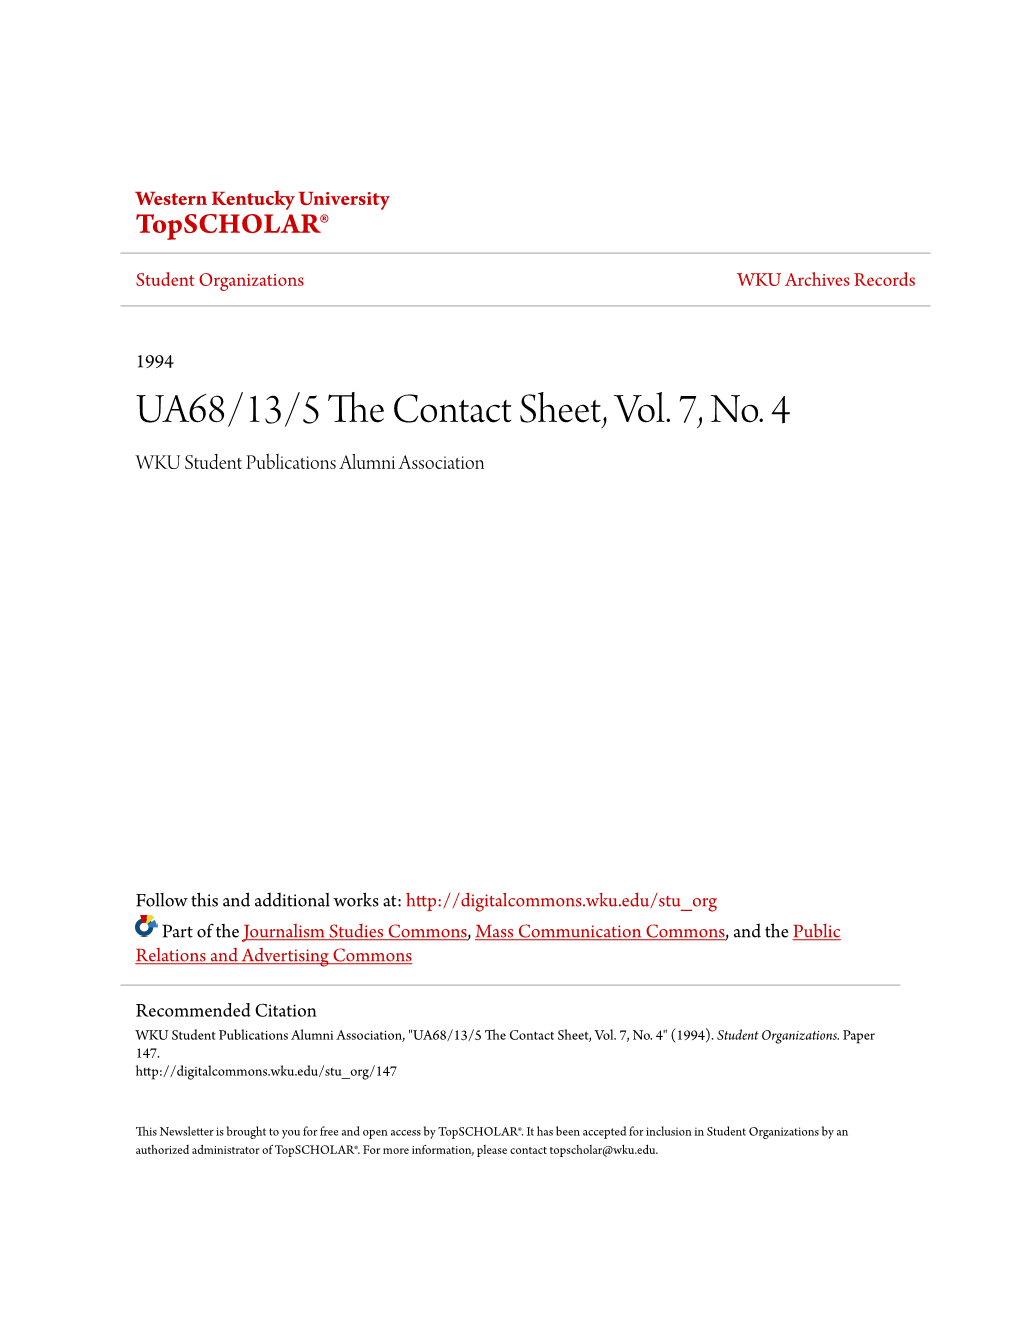 UA68/13/5 the Contact Sheet, Vol. 7, No. 4